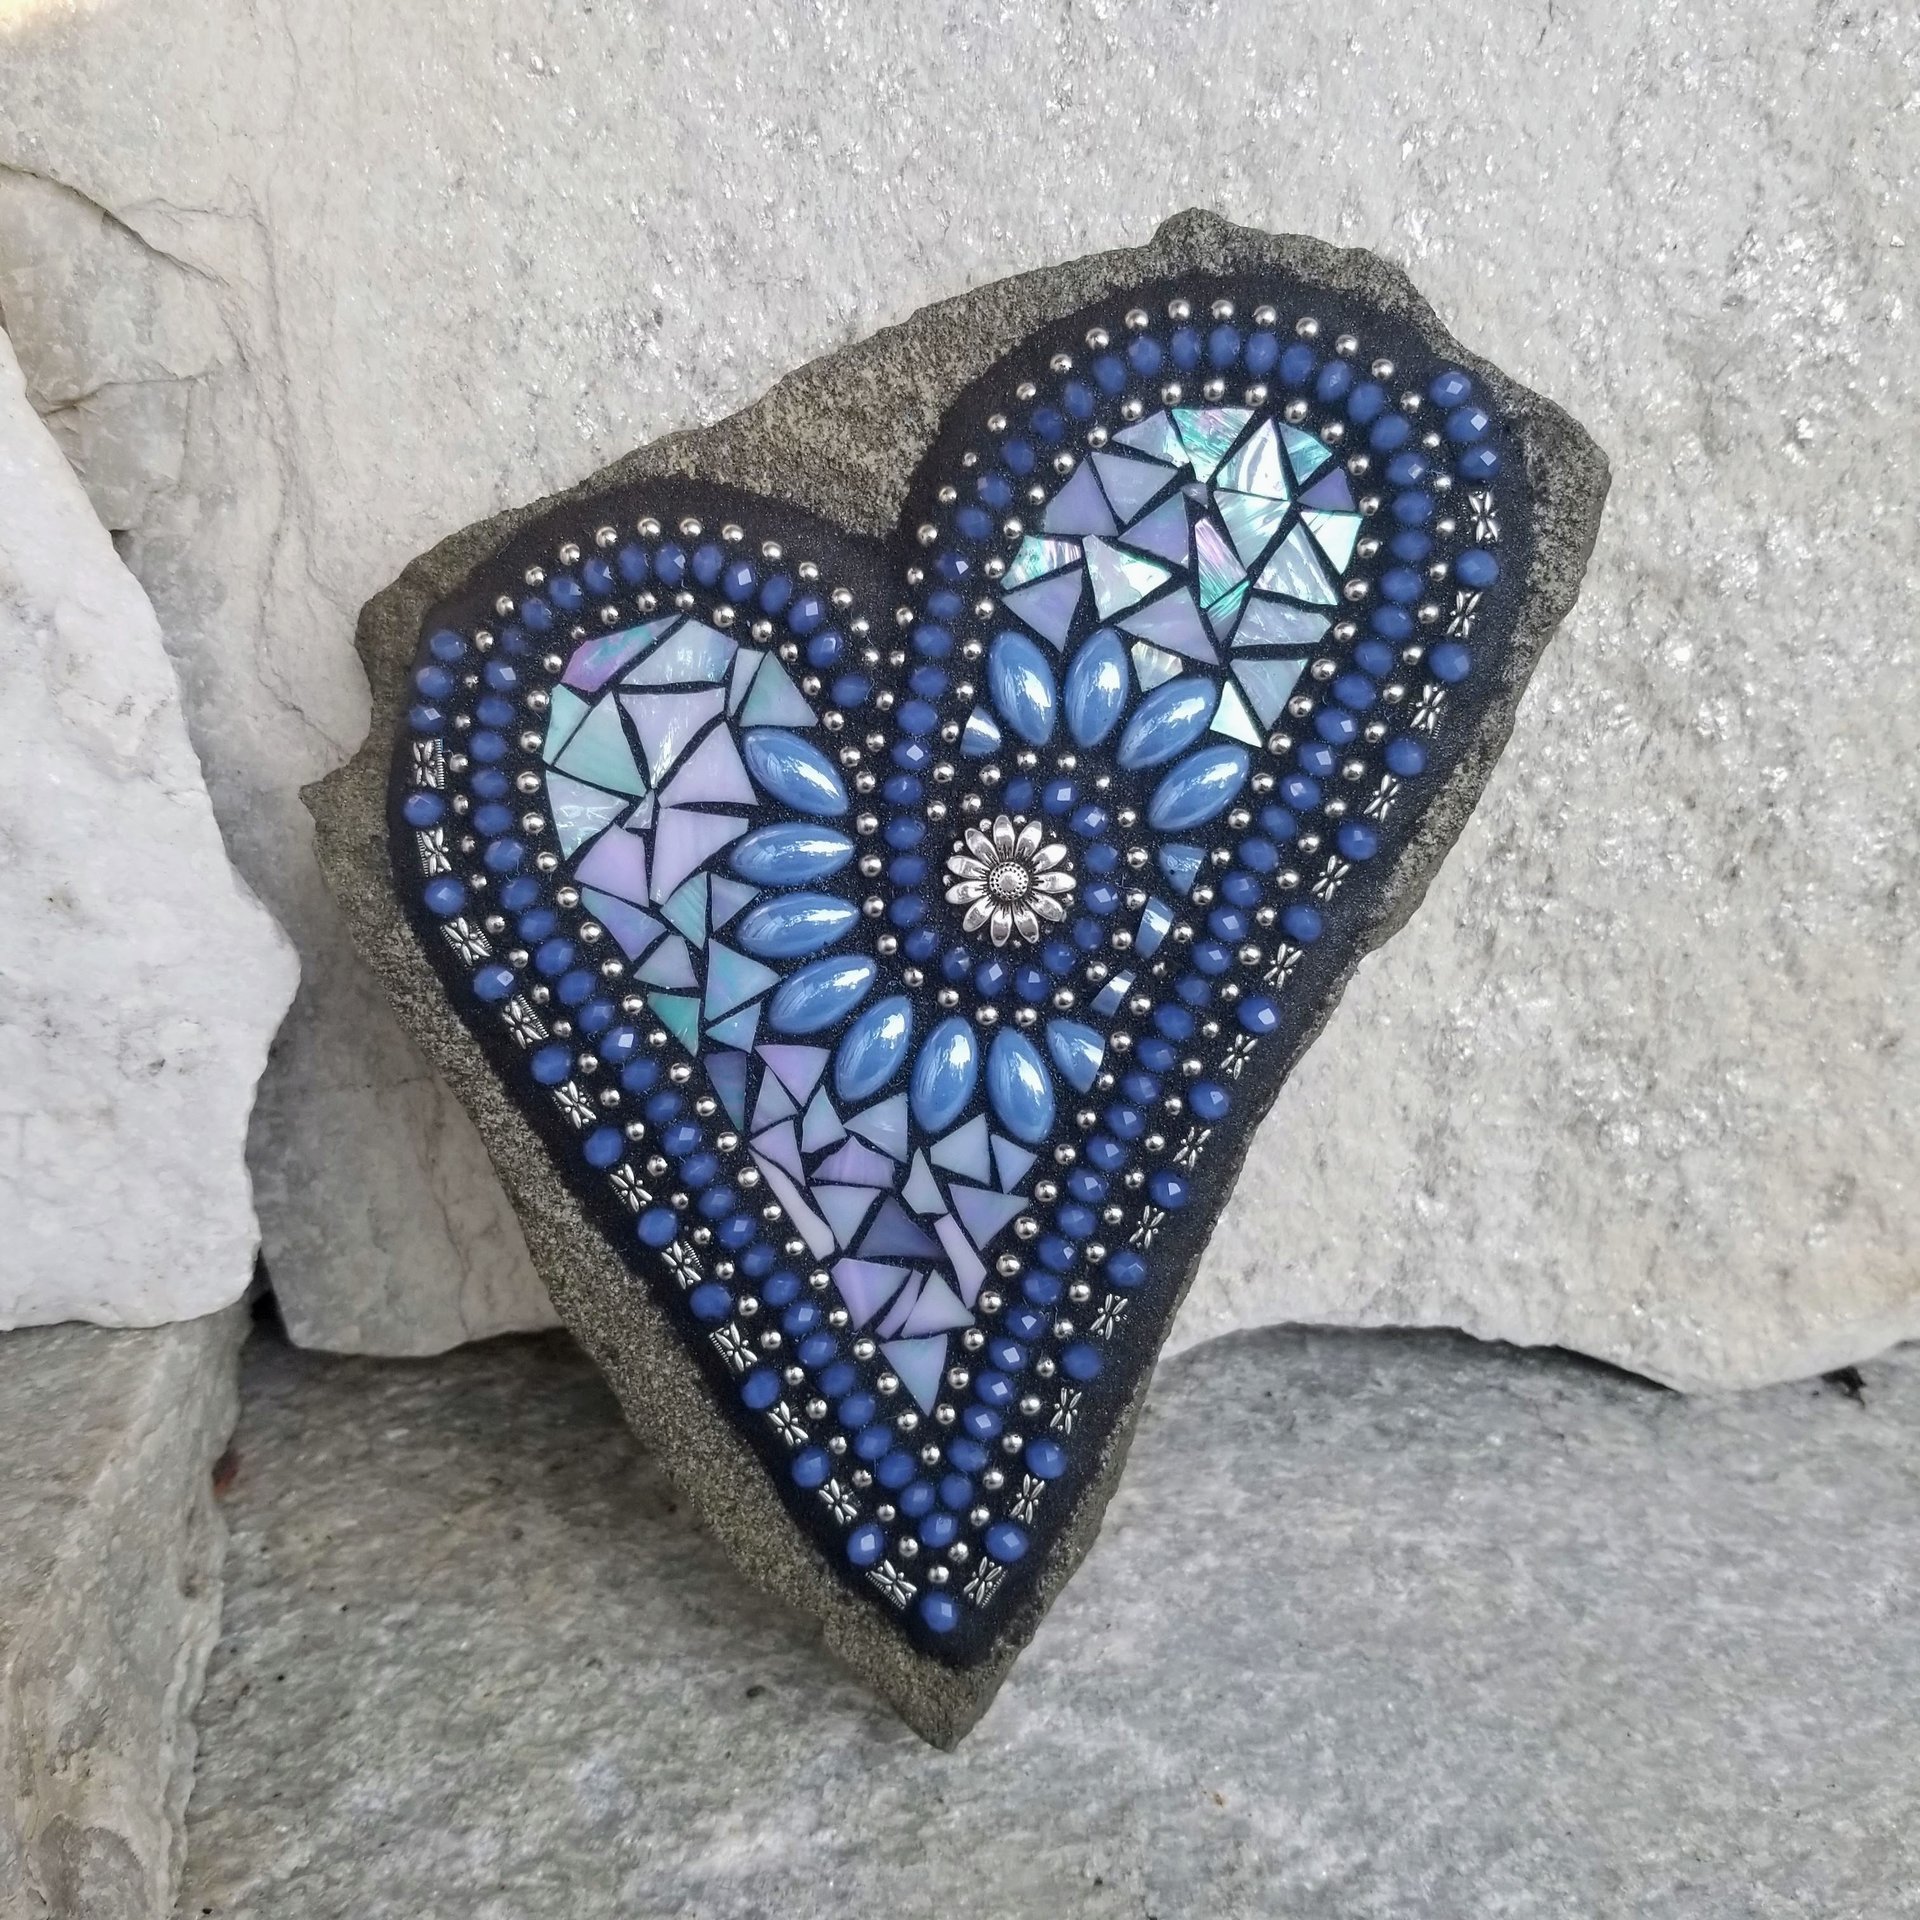 Iridescent Blue Mosaic Heart, Blue Flowers, Garden Stone, Sunflower